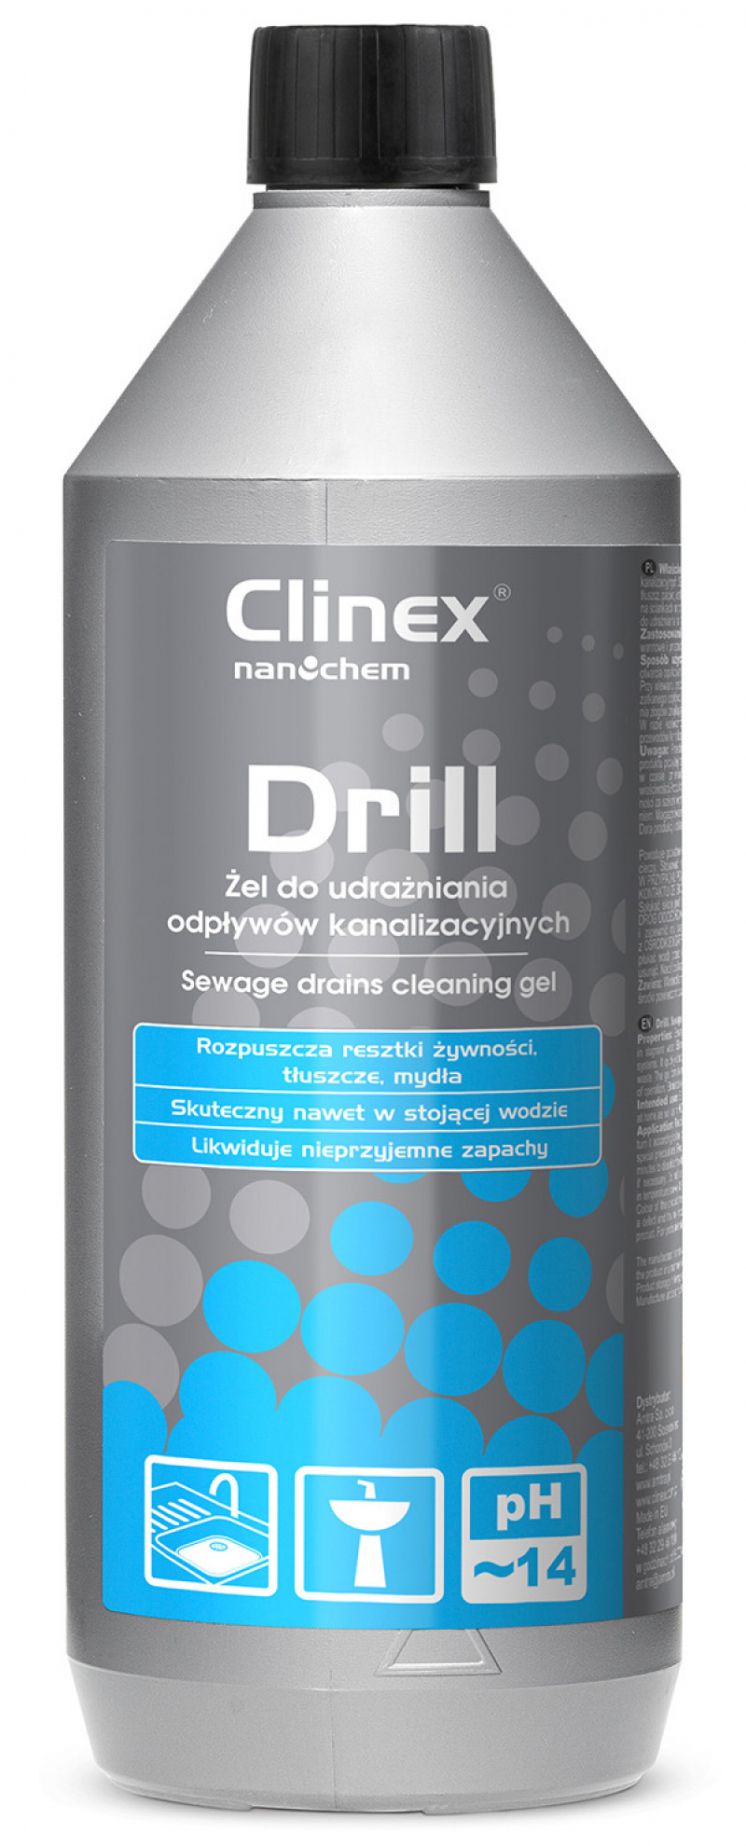 Żel do udrażniania odpływów kanalizacyjnych CLINEX Drill 1L